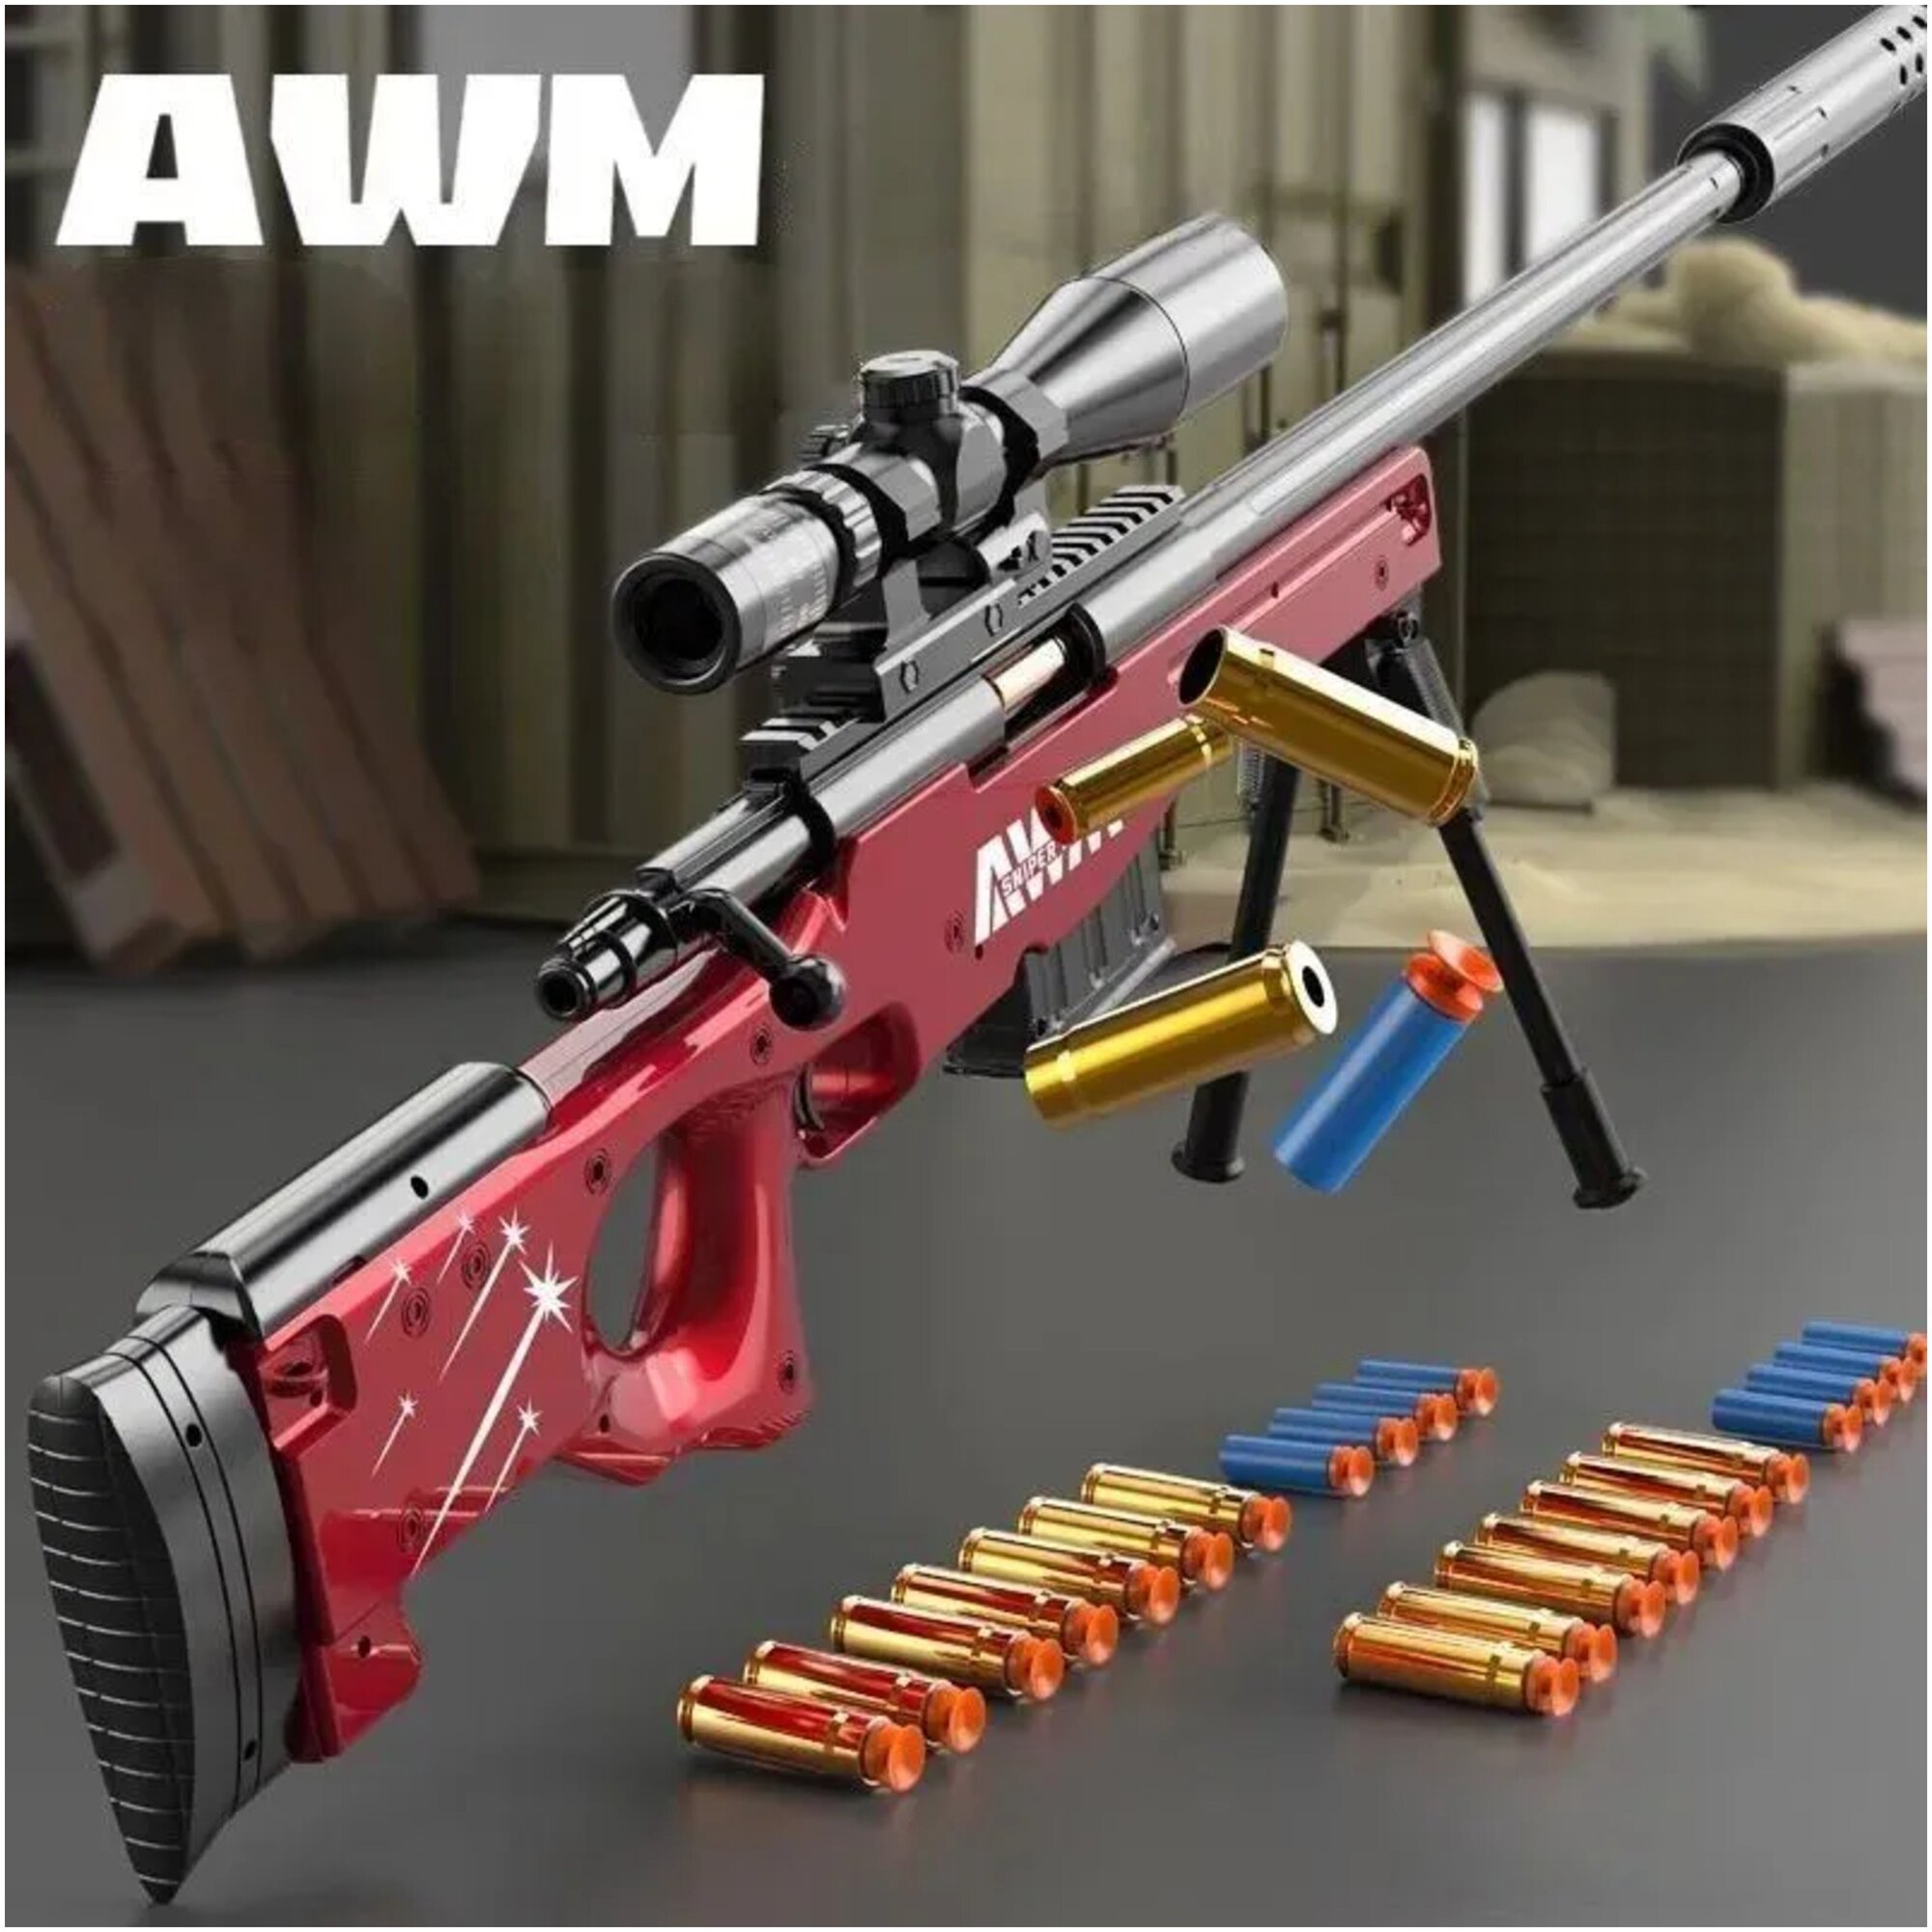 Awm или awp винтовка фото 54